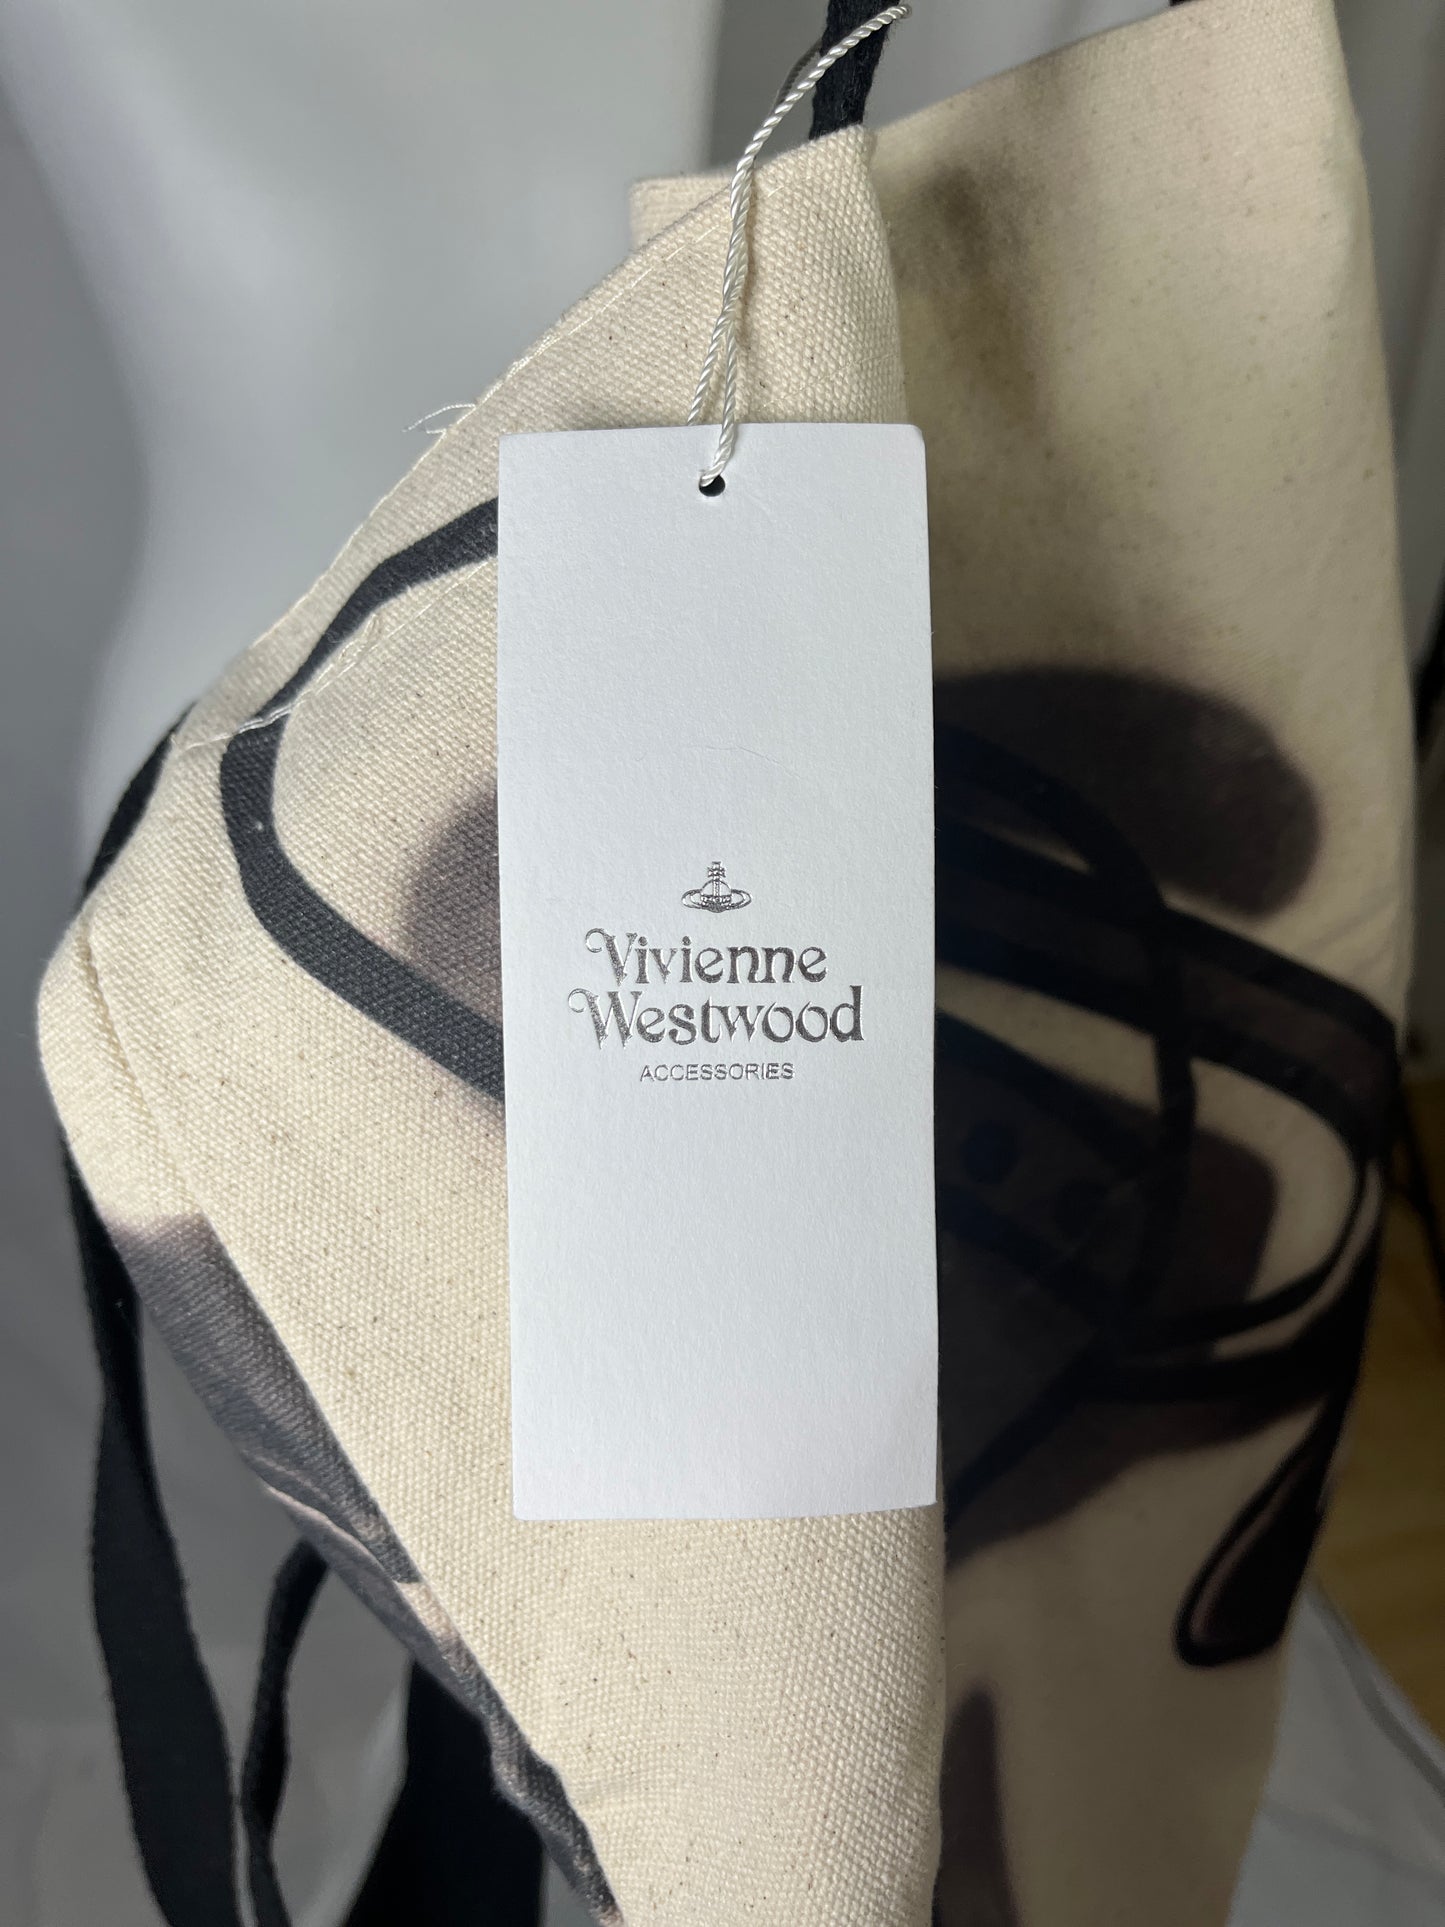 Vivienne Westwood Orb Print Tote Bag